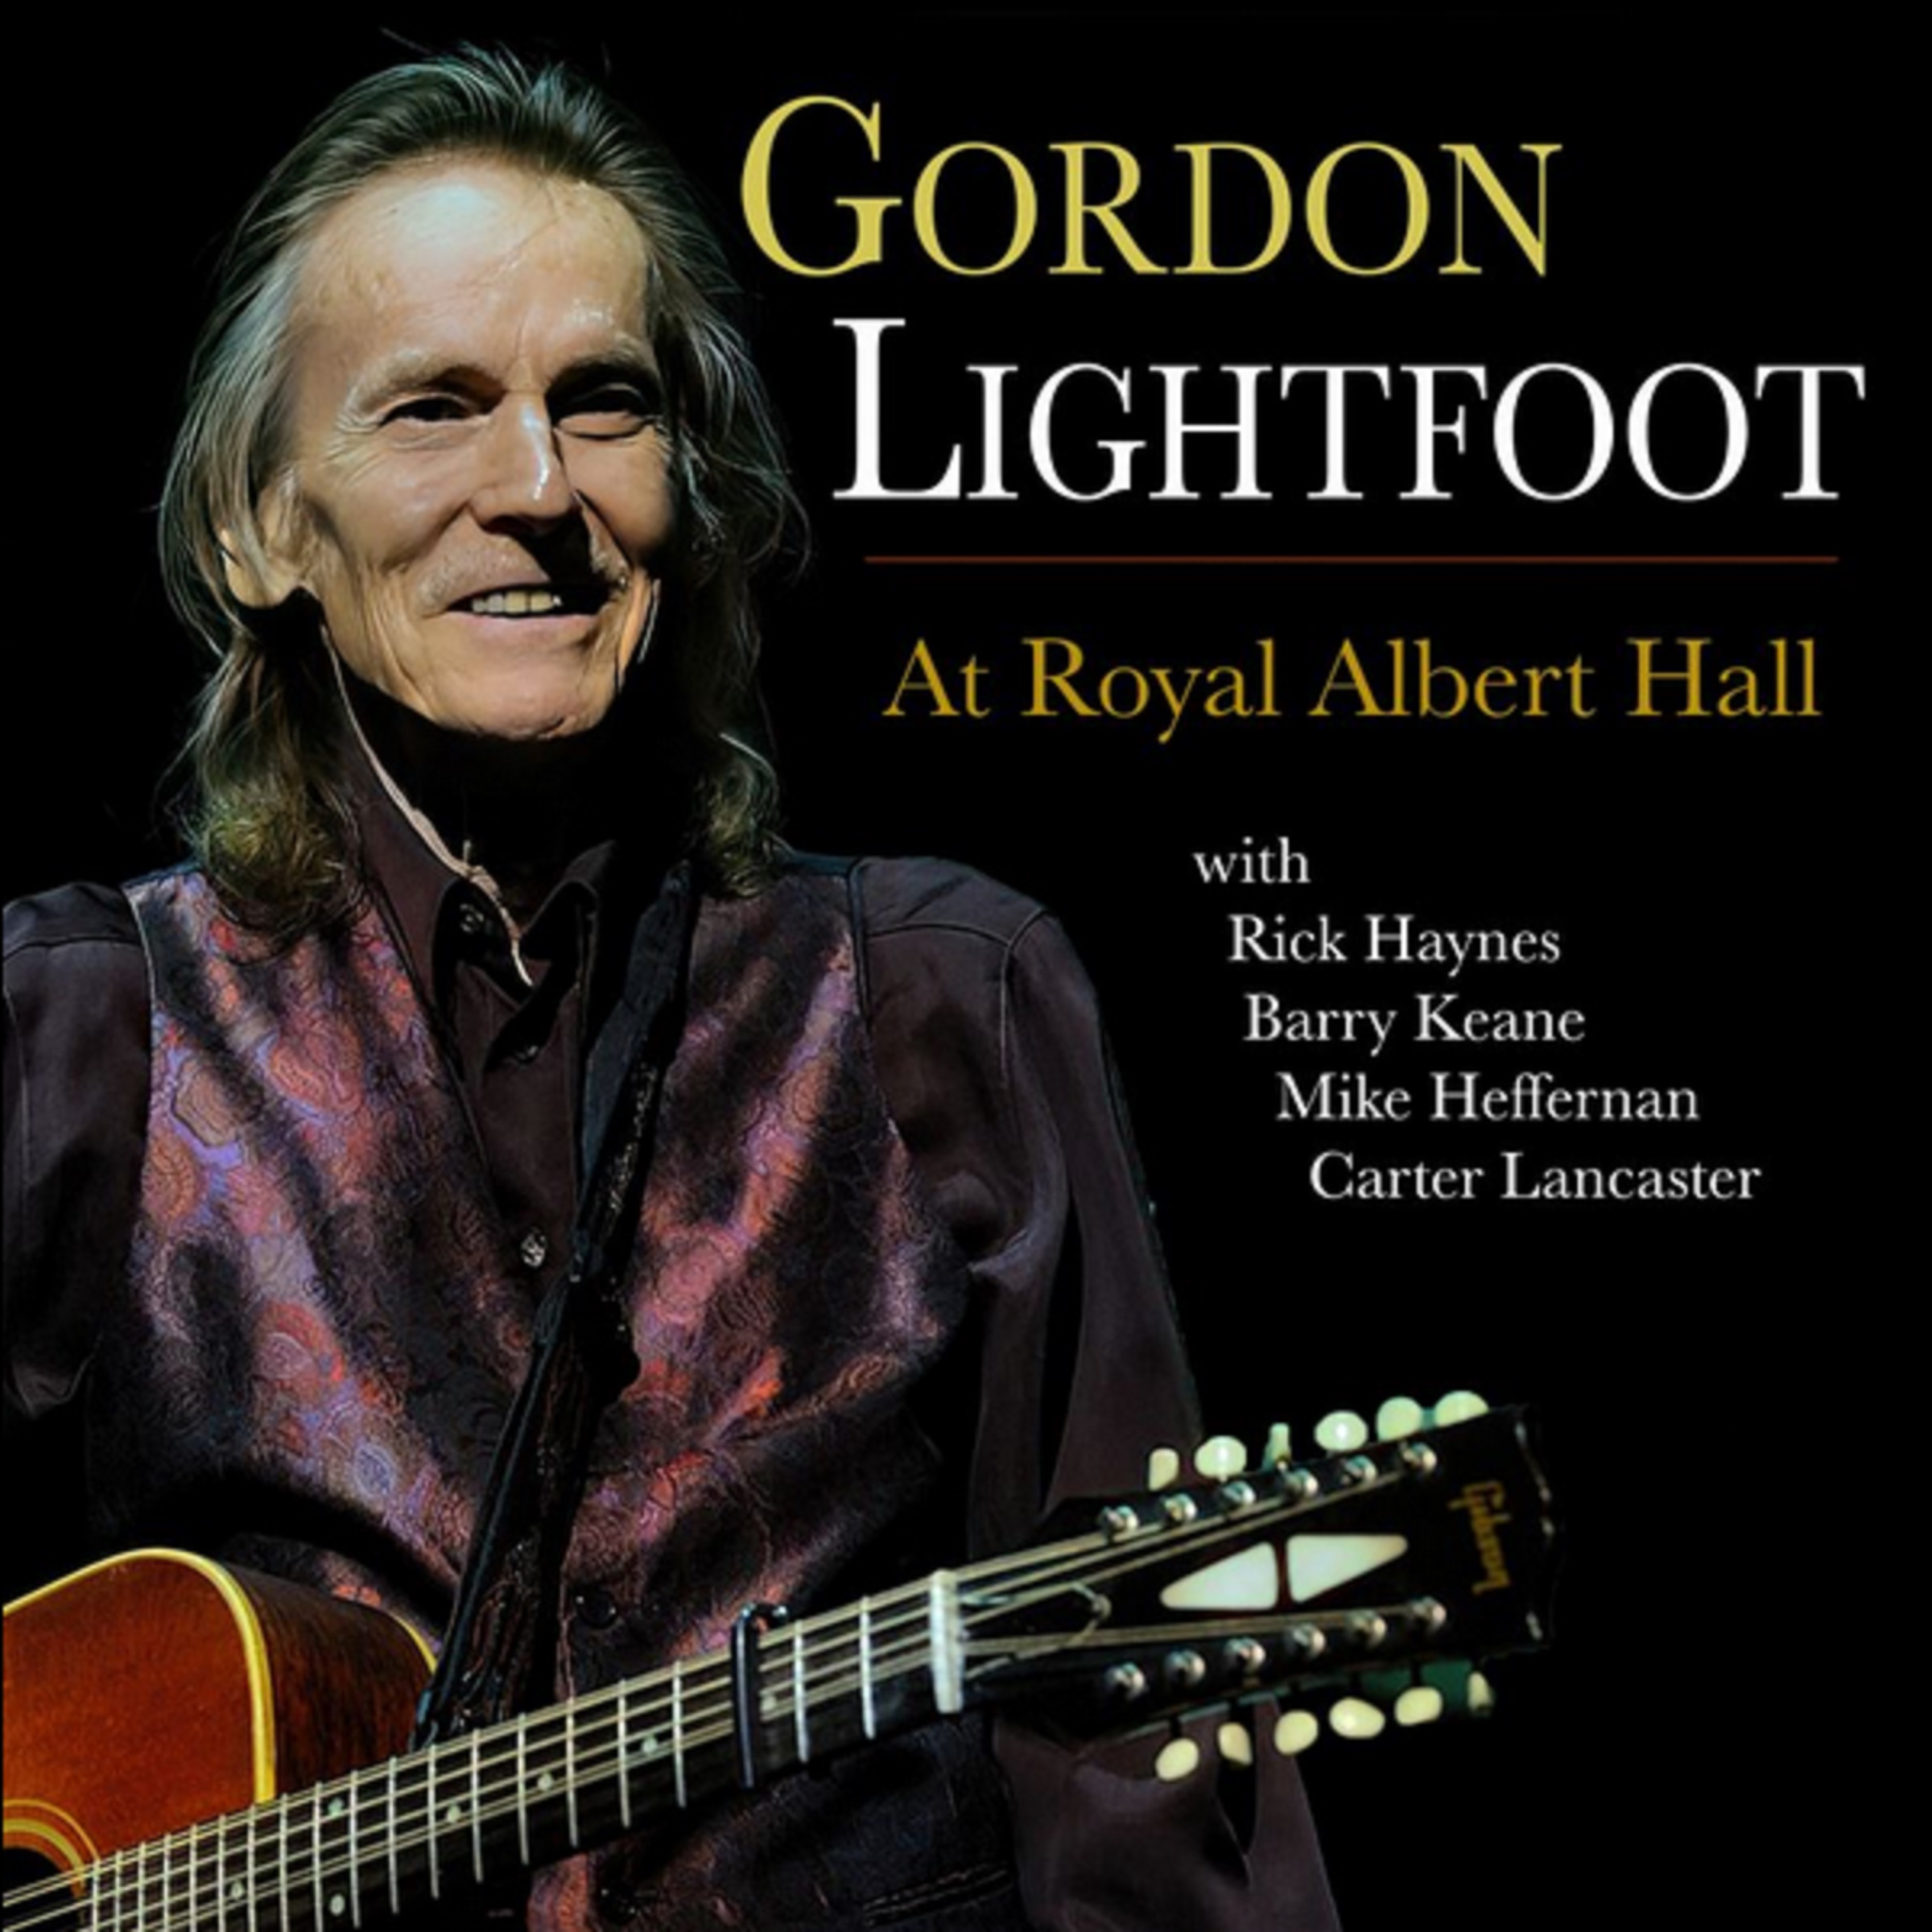 GORDON LIGHTFOOT - AT ROYAL ALBERT HALL, THE REVERED SONGWRITER’S FINAL ALBUM ON JULY 14